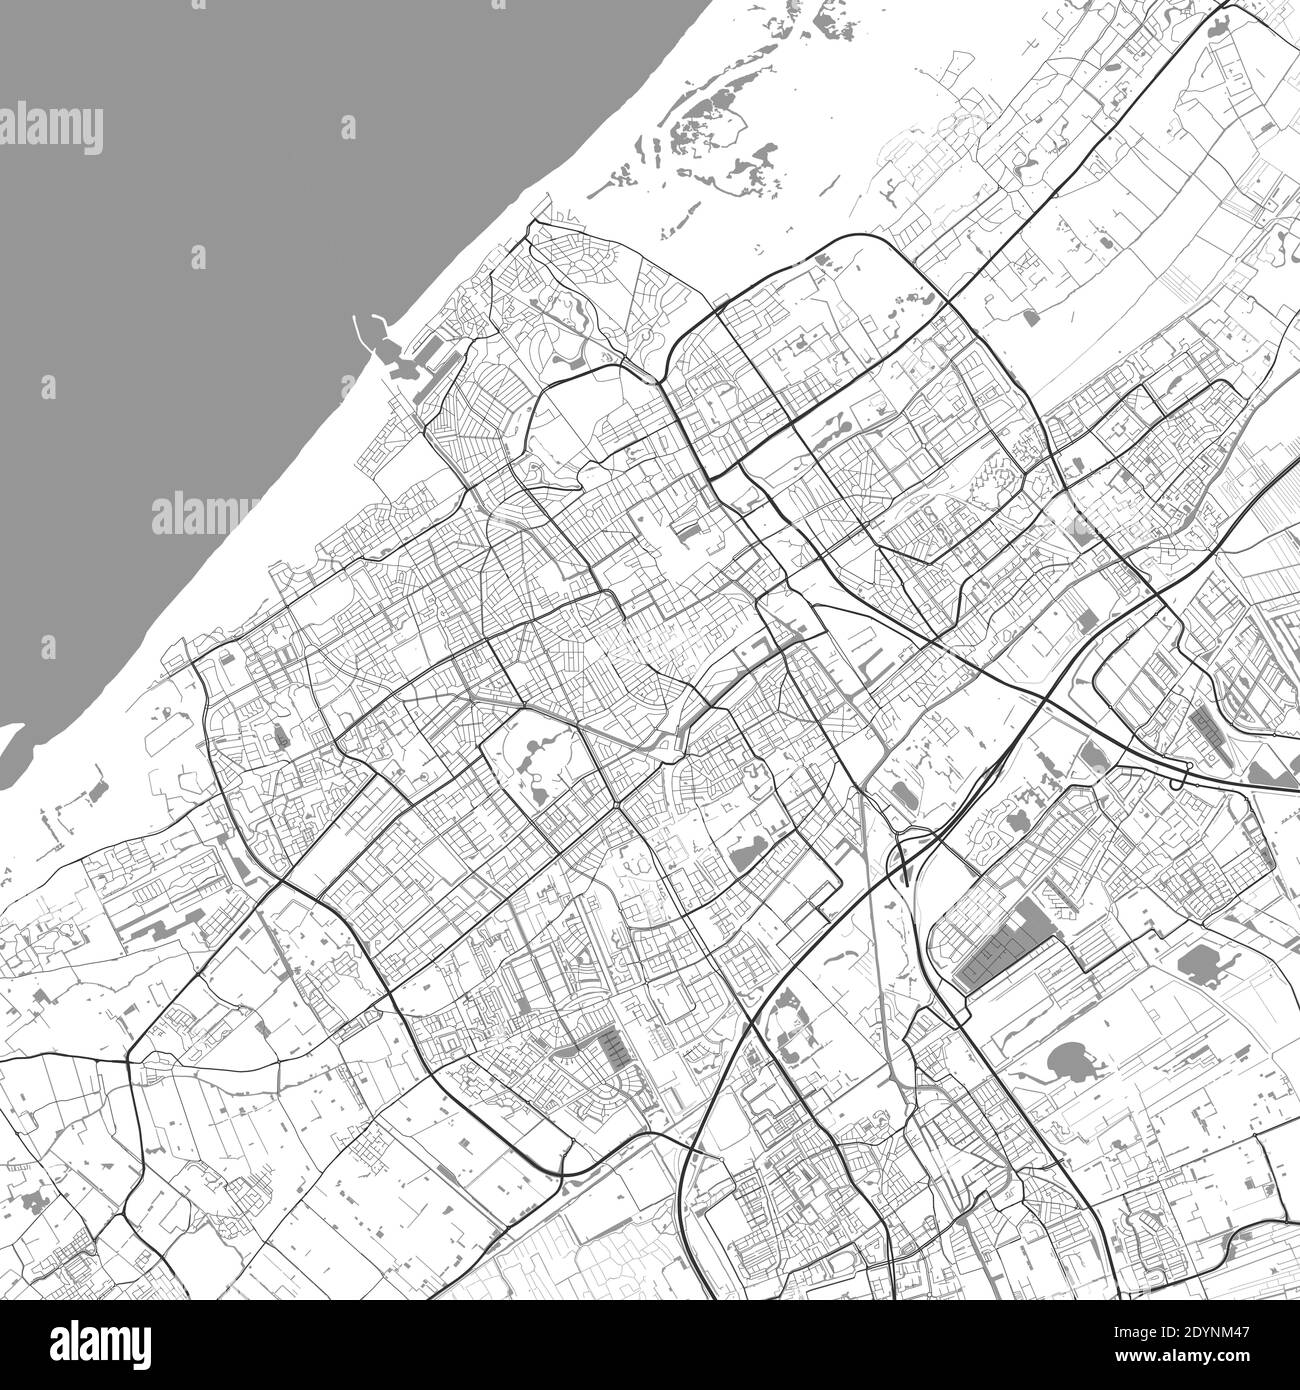 Mapa urbano de la haya. Ilustración vectorial, póster artístico en escala de grises del mapa de la haya. Imagen de mapa de calles con carreteras, vista del área metropolitana de la ciudad. Ilustración del Vector